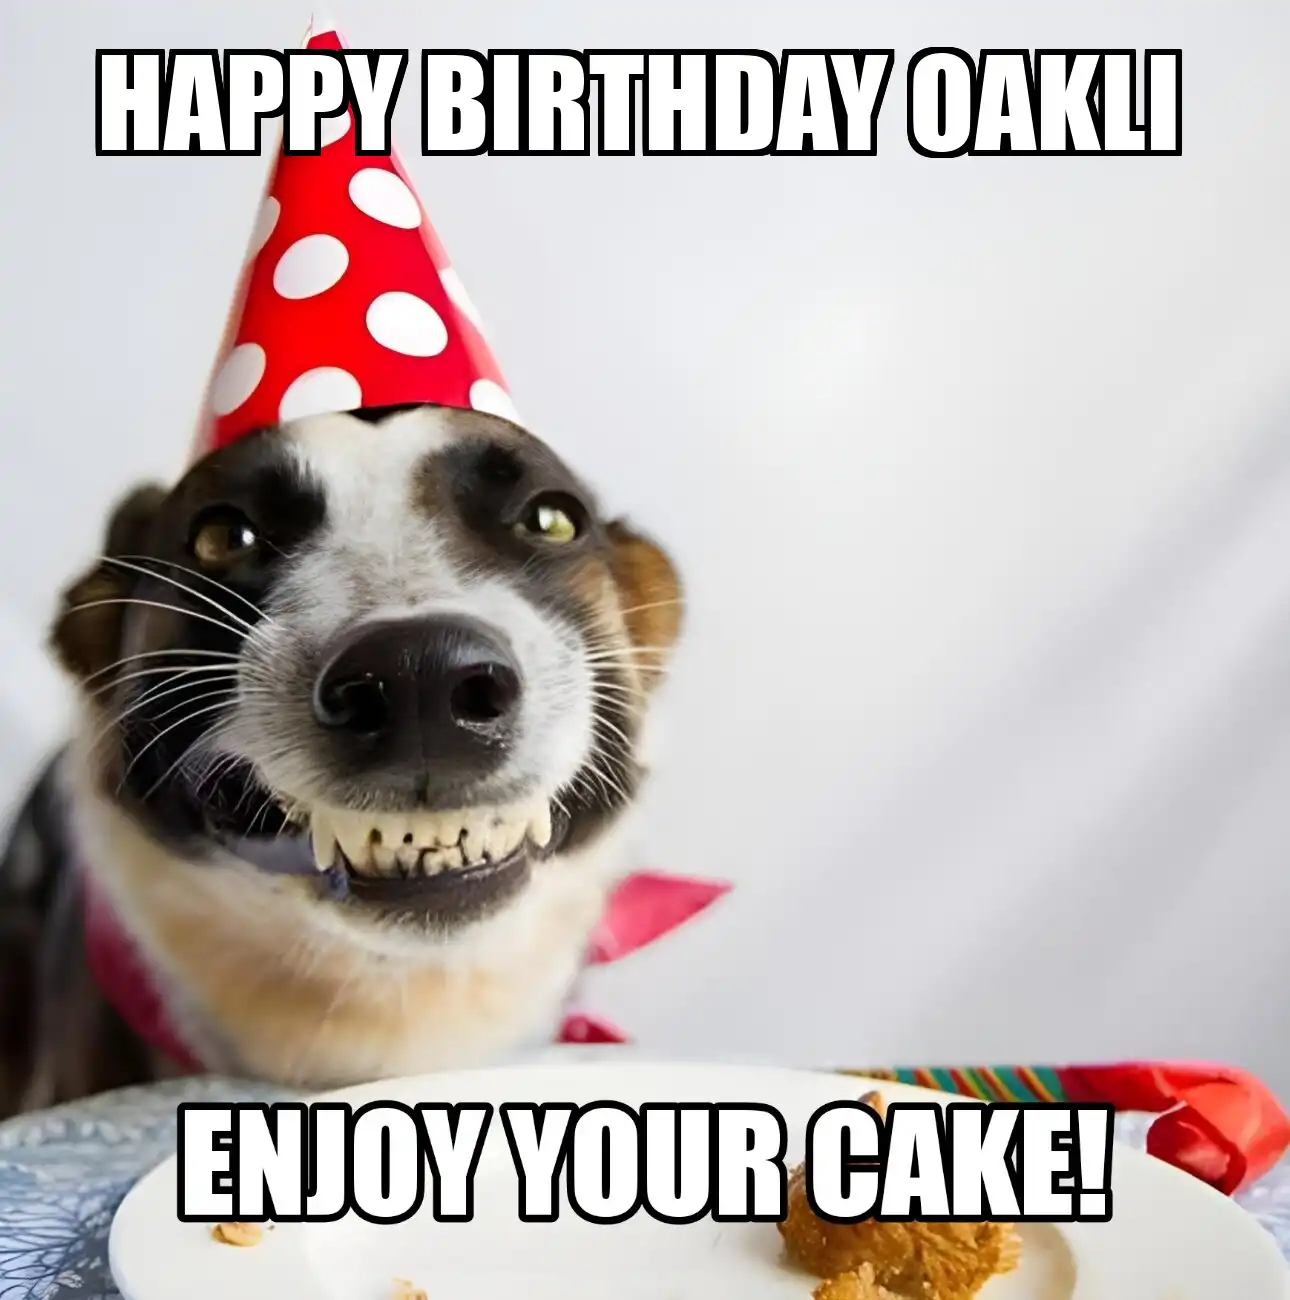 Happy Birthday Oakli Enjoy Your Cake Dog Meme